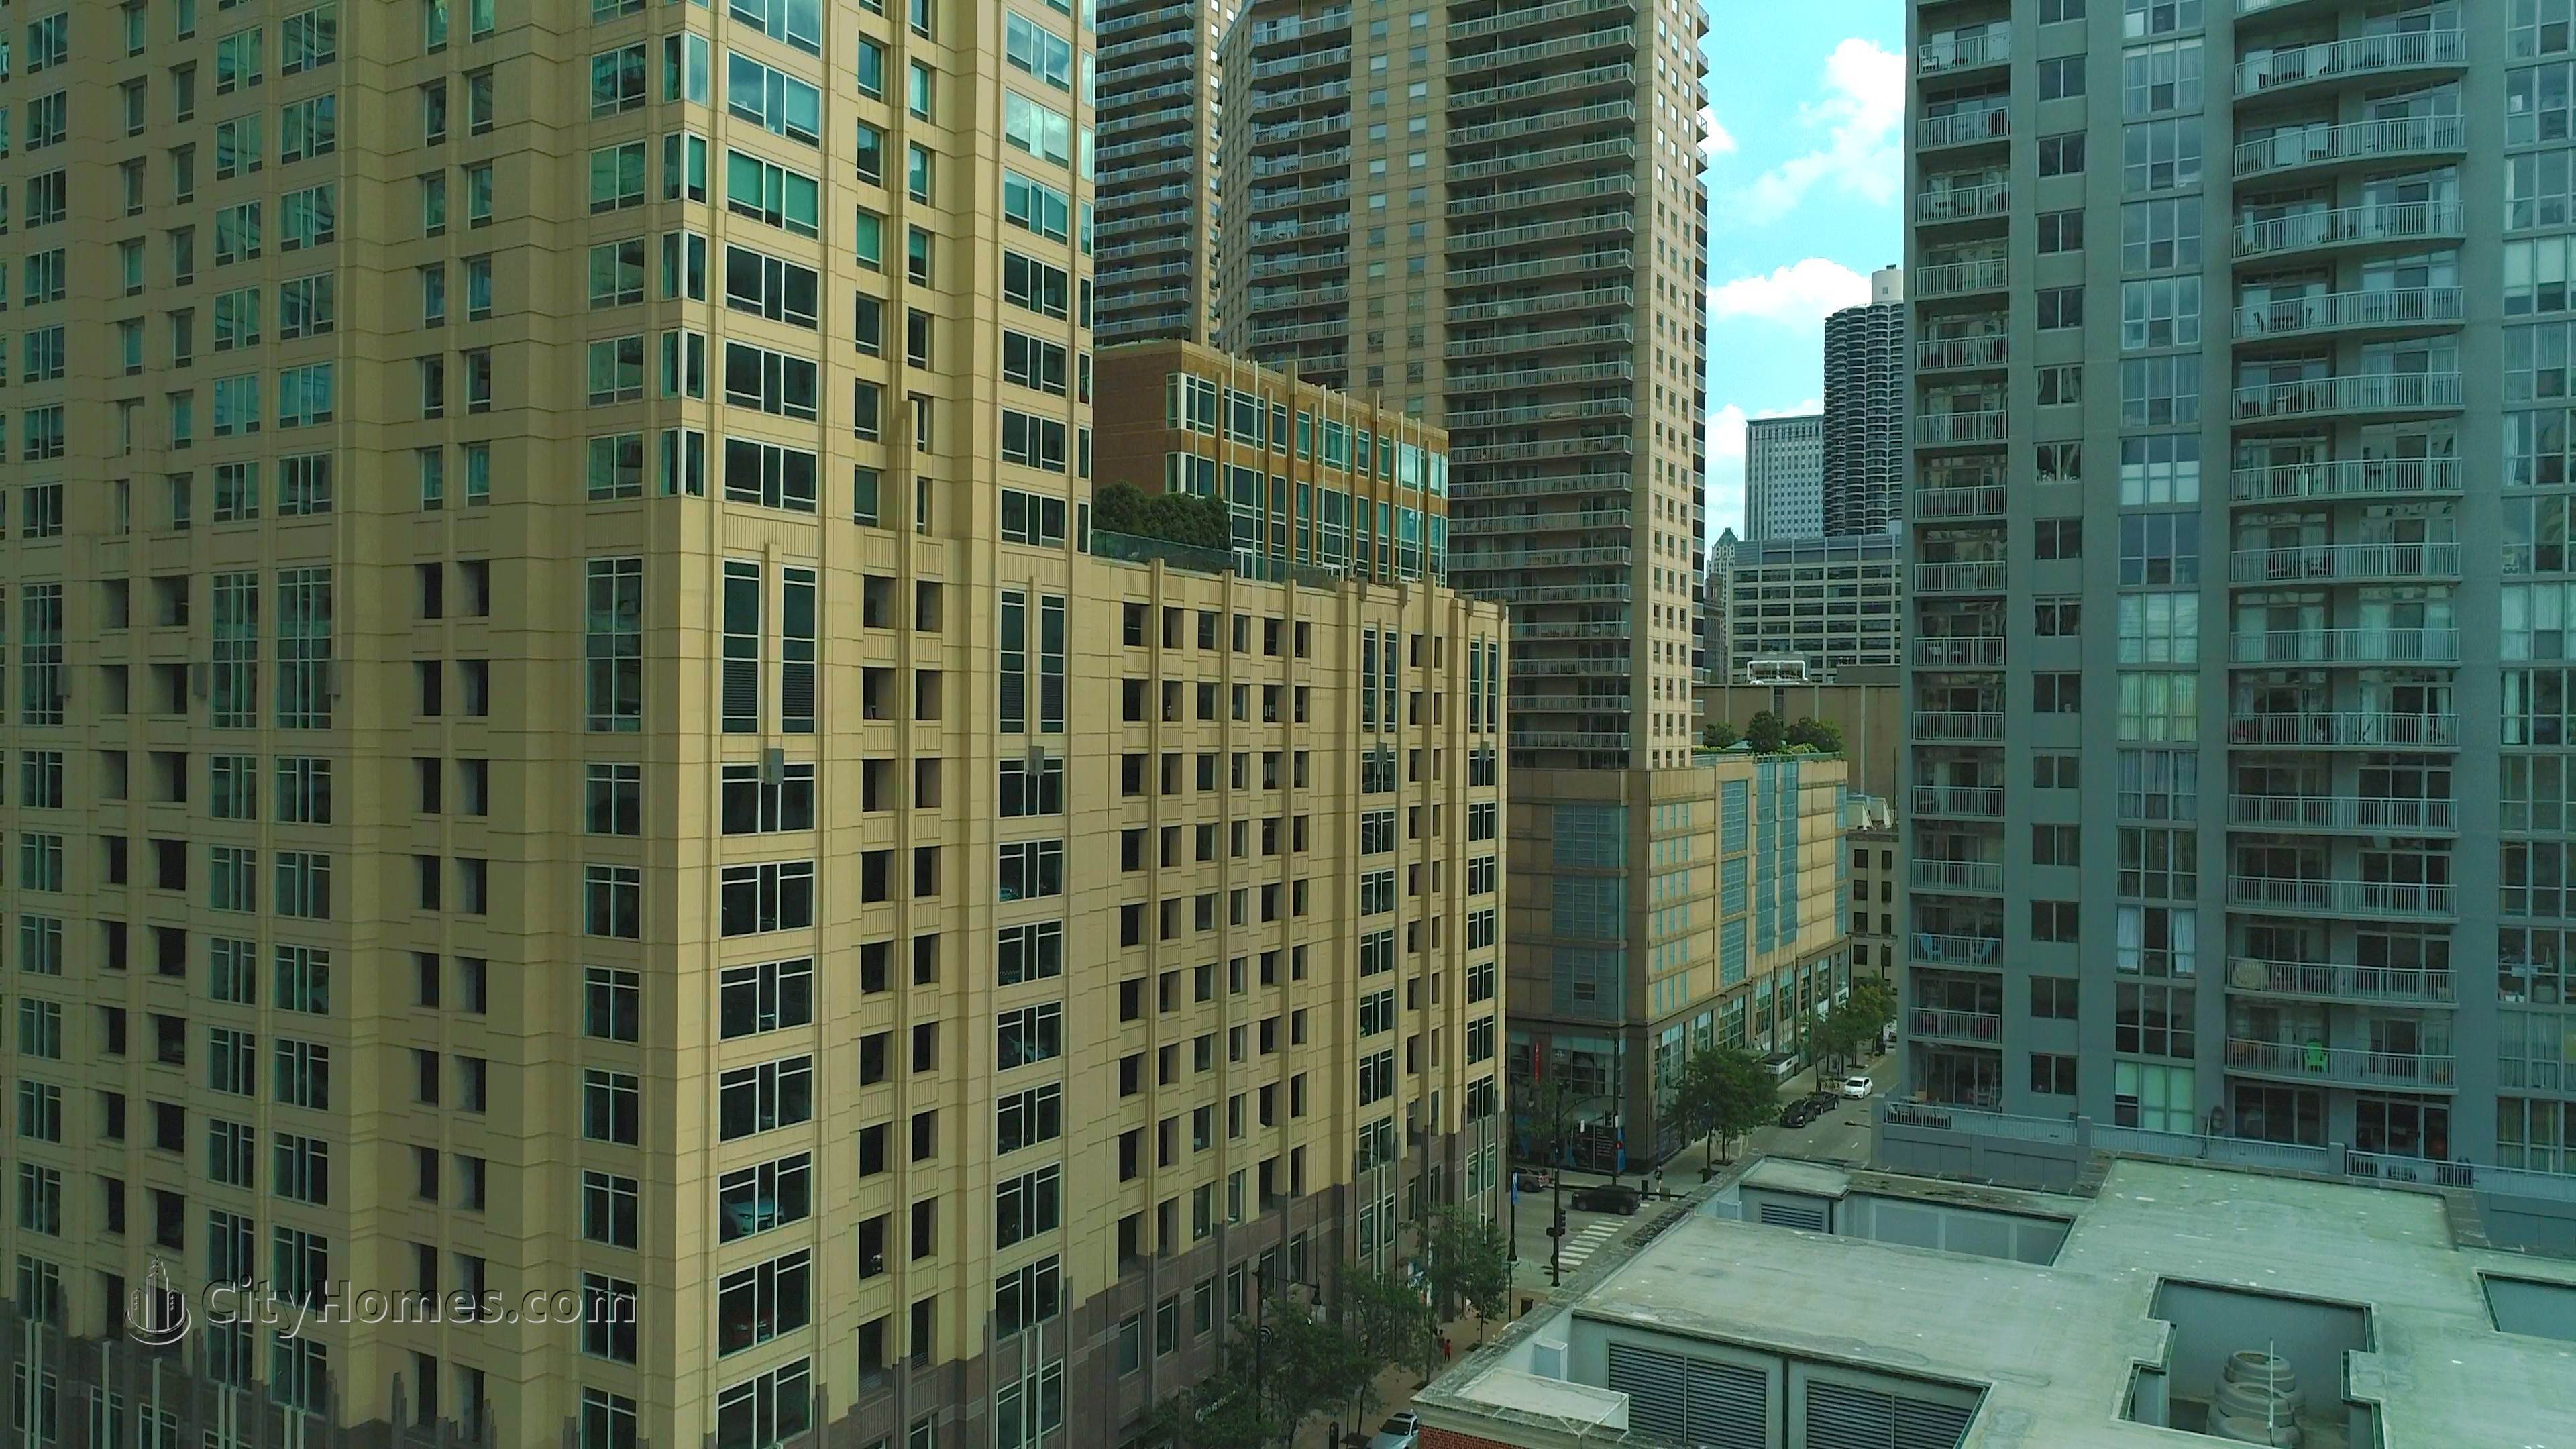 Millennium Centre bâtiment à 33 W Ontario St, Central Chicago, Chicago, IL 60610